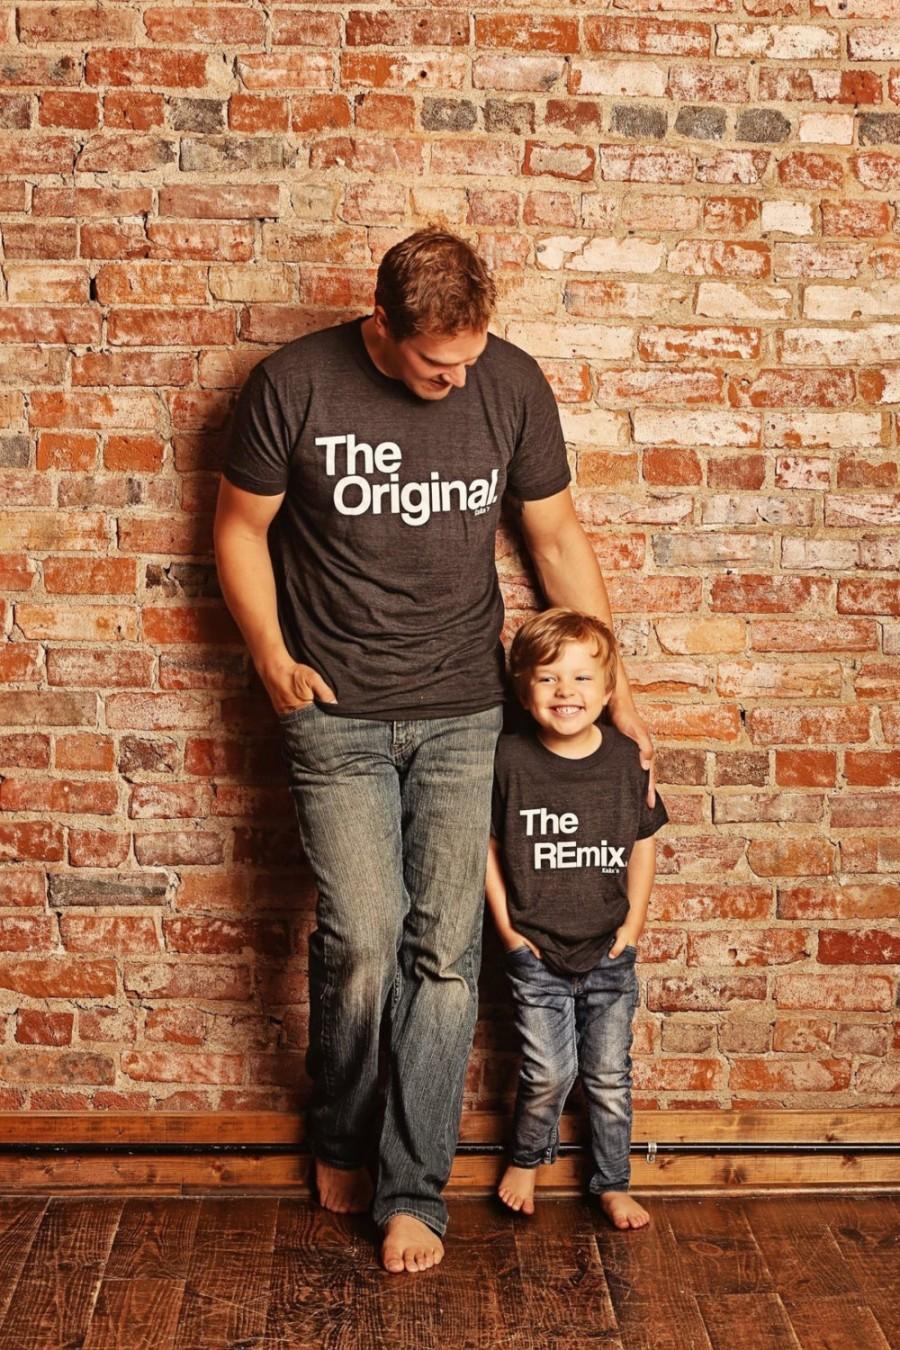 Mariage - Fathers Day Gift Matching Family Shirts, Original and Remix Matching Shirts, Shirts Match Family Shirts, Dad Shirts, Son Shirts, T-shirt Set